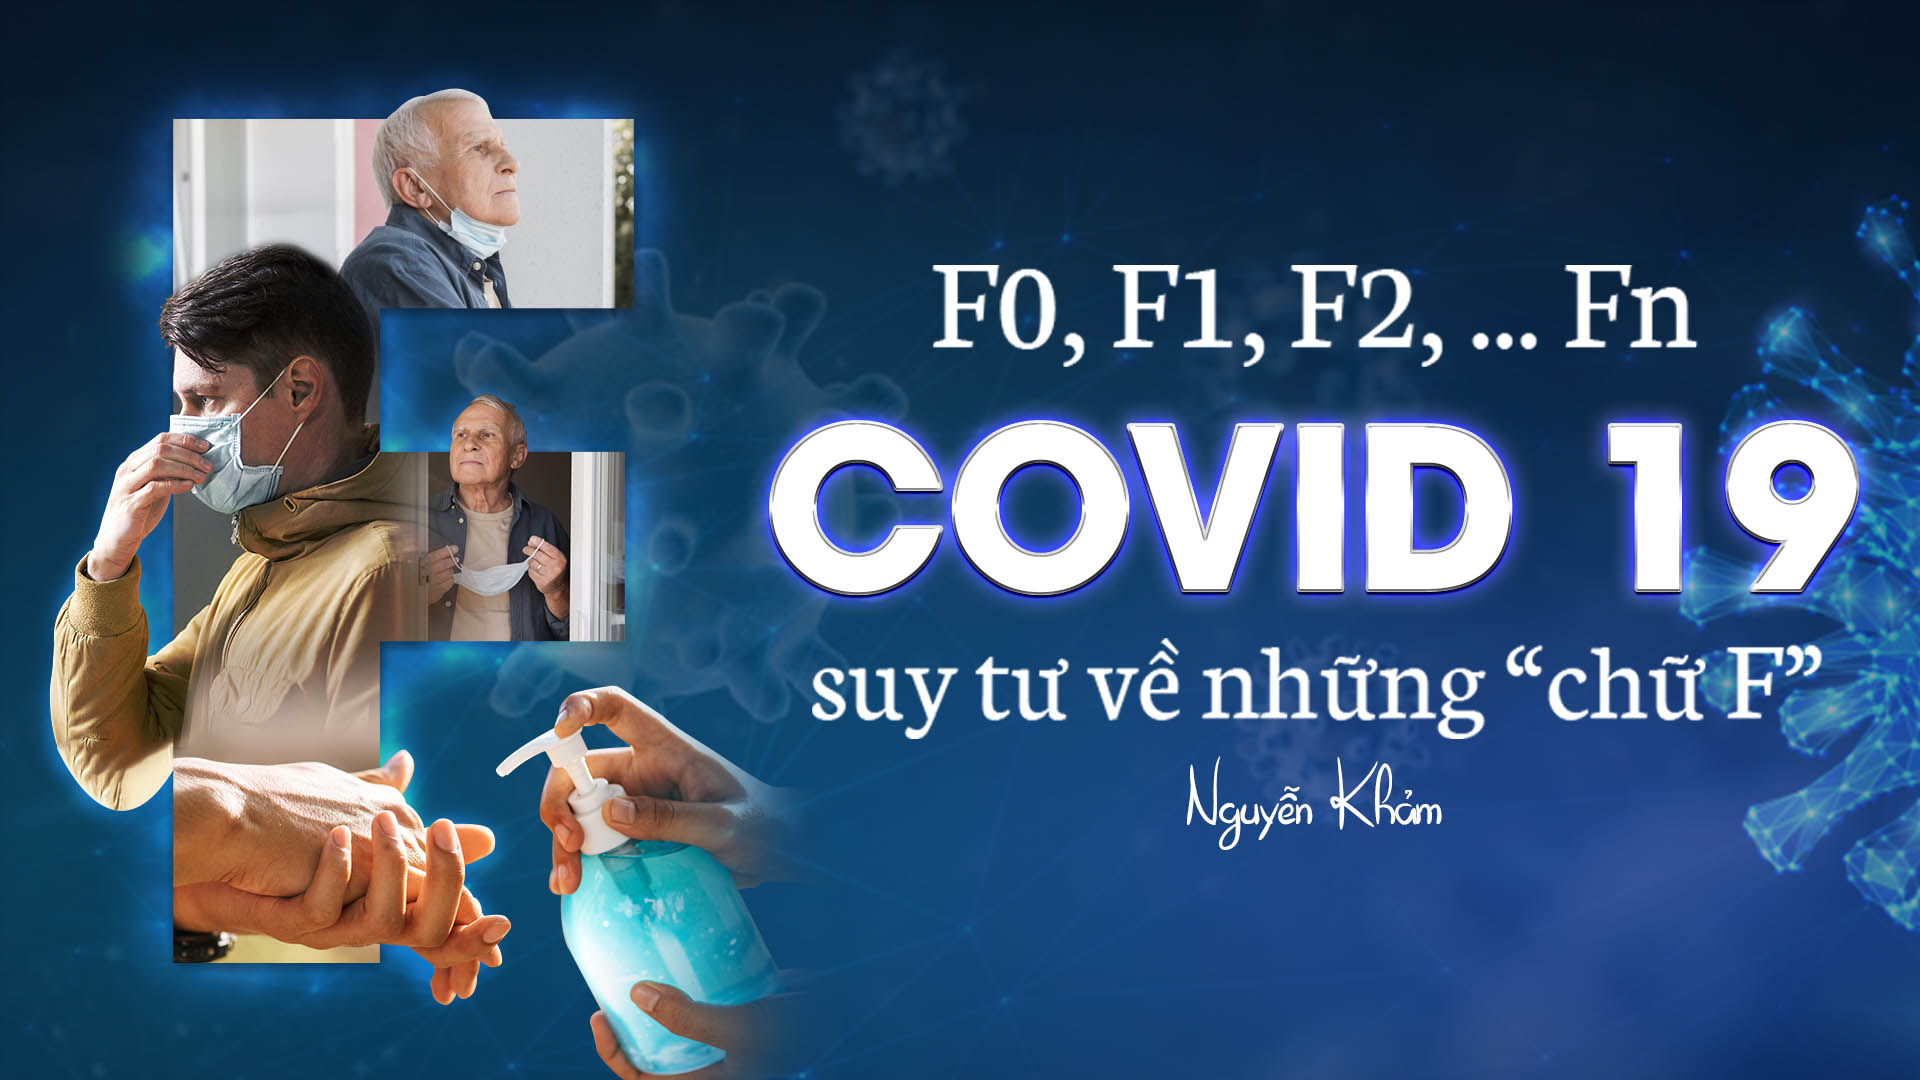 F1, F2,…, Fn – Suy tư về những chữ “F” thời Covid-19